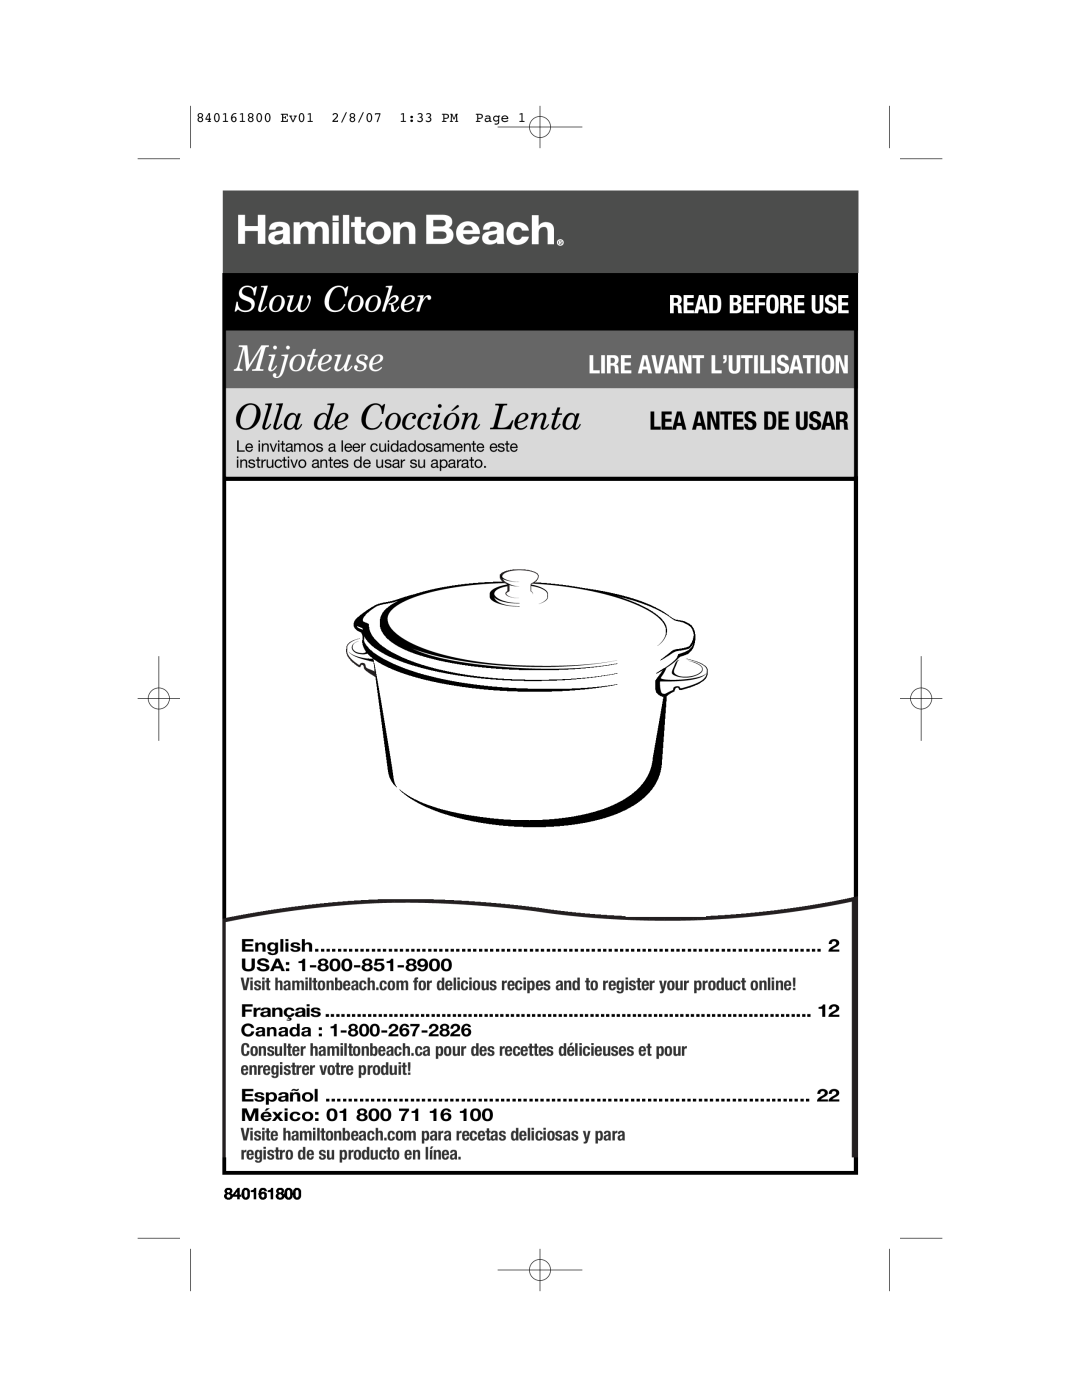 Hamilton Beach 840161800 manual English, Français, Canada, Español, México 01 800 71 16, Slow Cooker Mijoteuse 